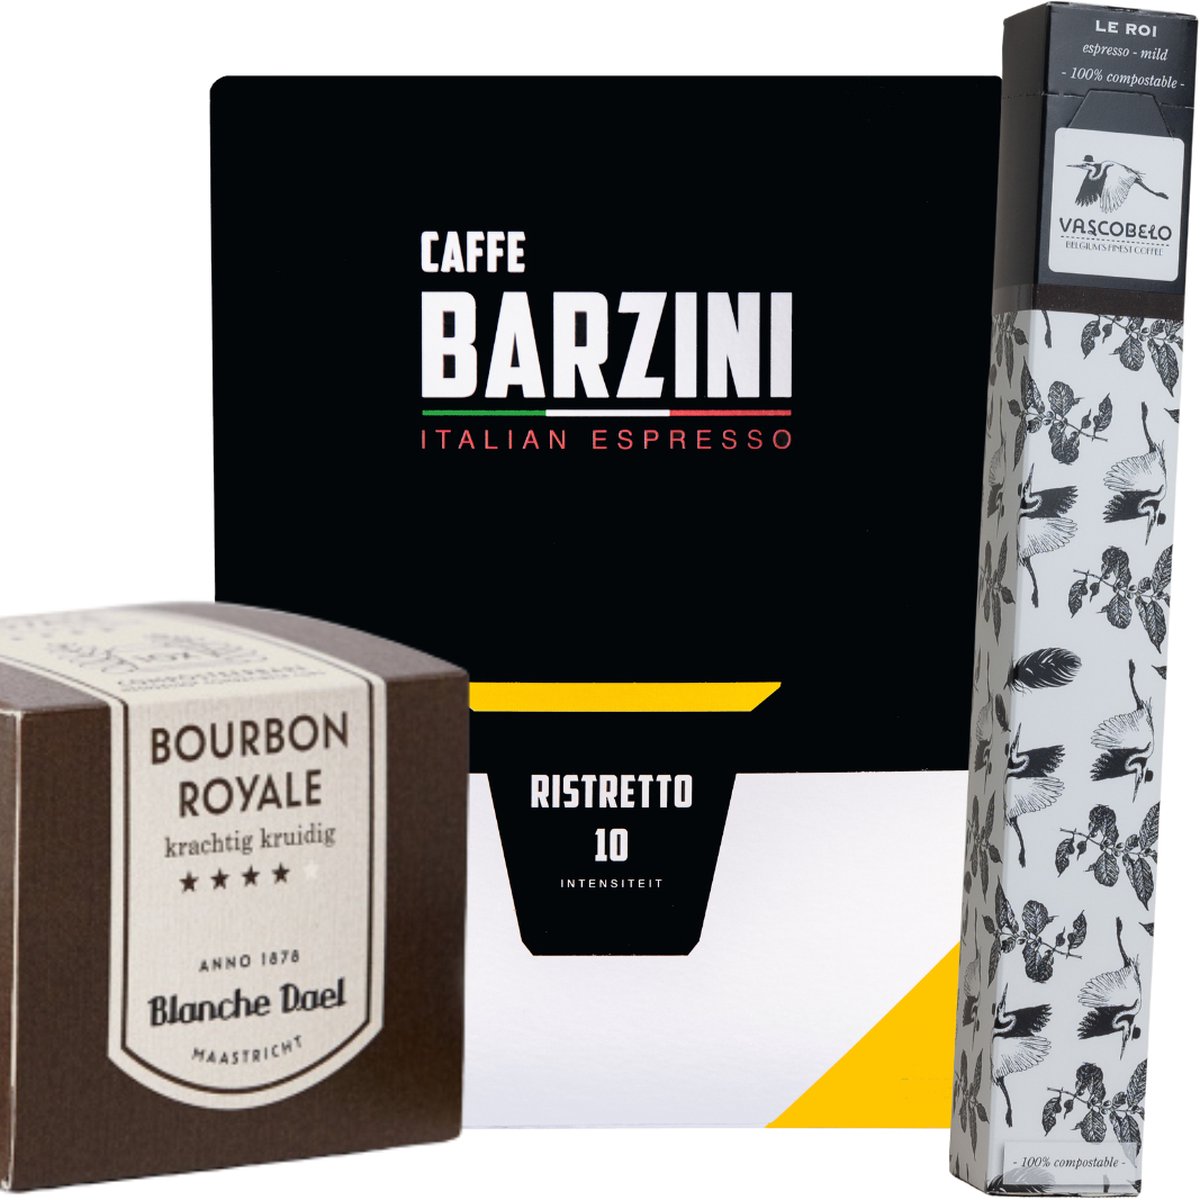 Koffiecups proefpakket Dark | 110 Cups, Barzini, Vascobelo, Segafredo & Blanche Dael koffie cups geschikt voor Nespresso apparaten